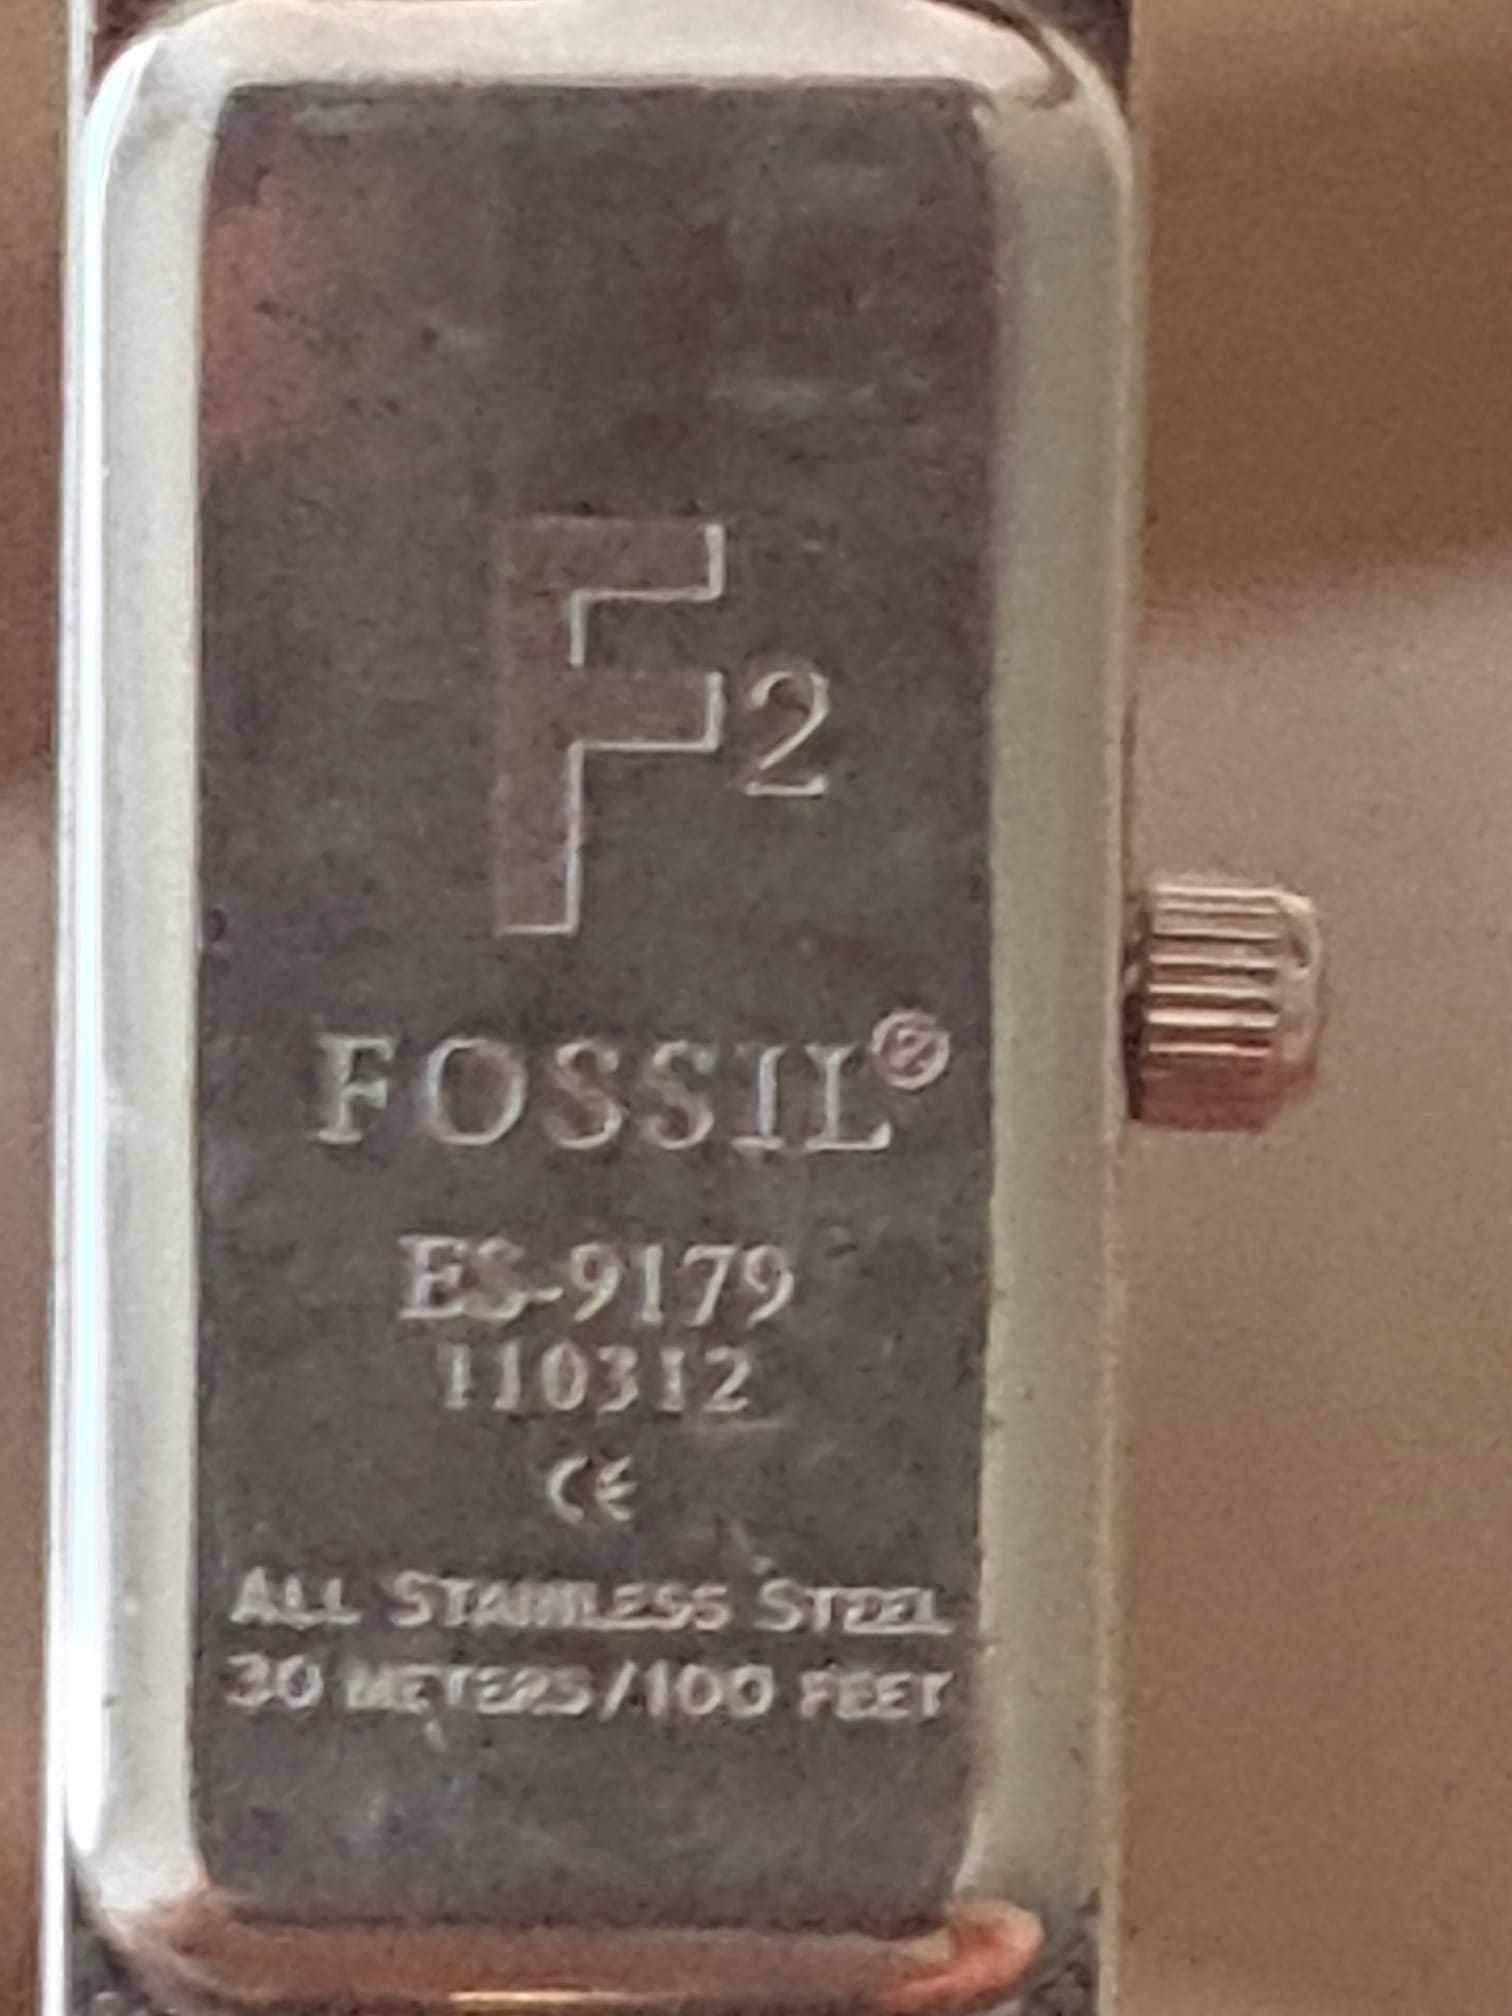 Relógio de pulso feminino Fossil ES9179